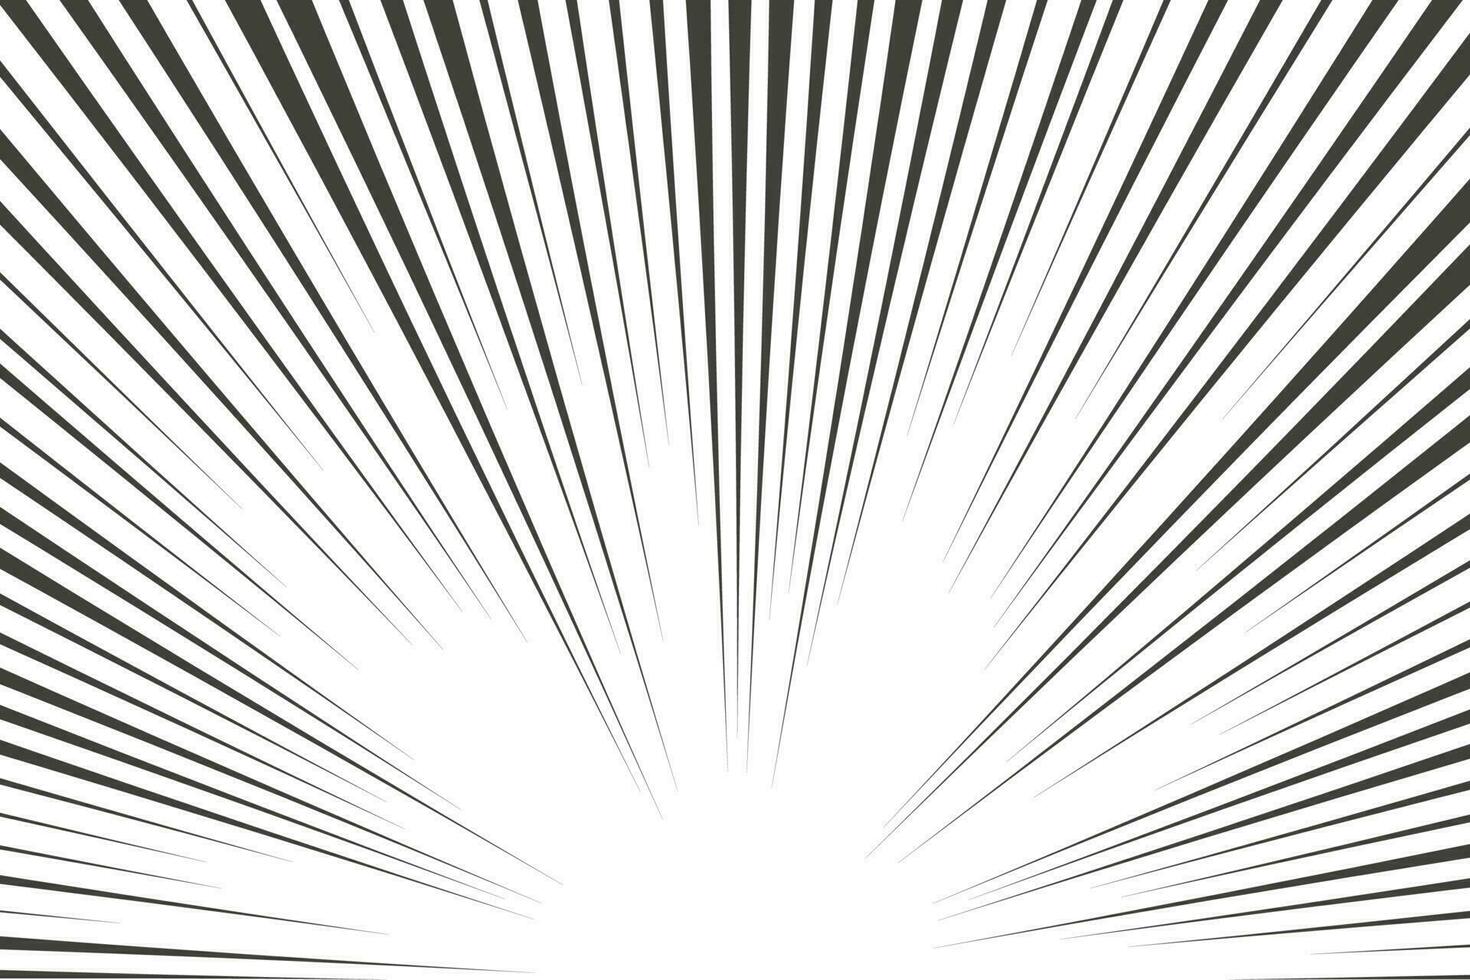 Líneas radiales de manga cómica con efecto de velocidad para cómics. fondo de explosión en blanco y negro. resplandor de explosión de rayos flash. marco vectorial vector